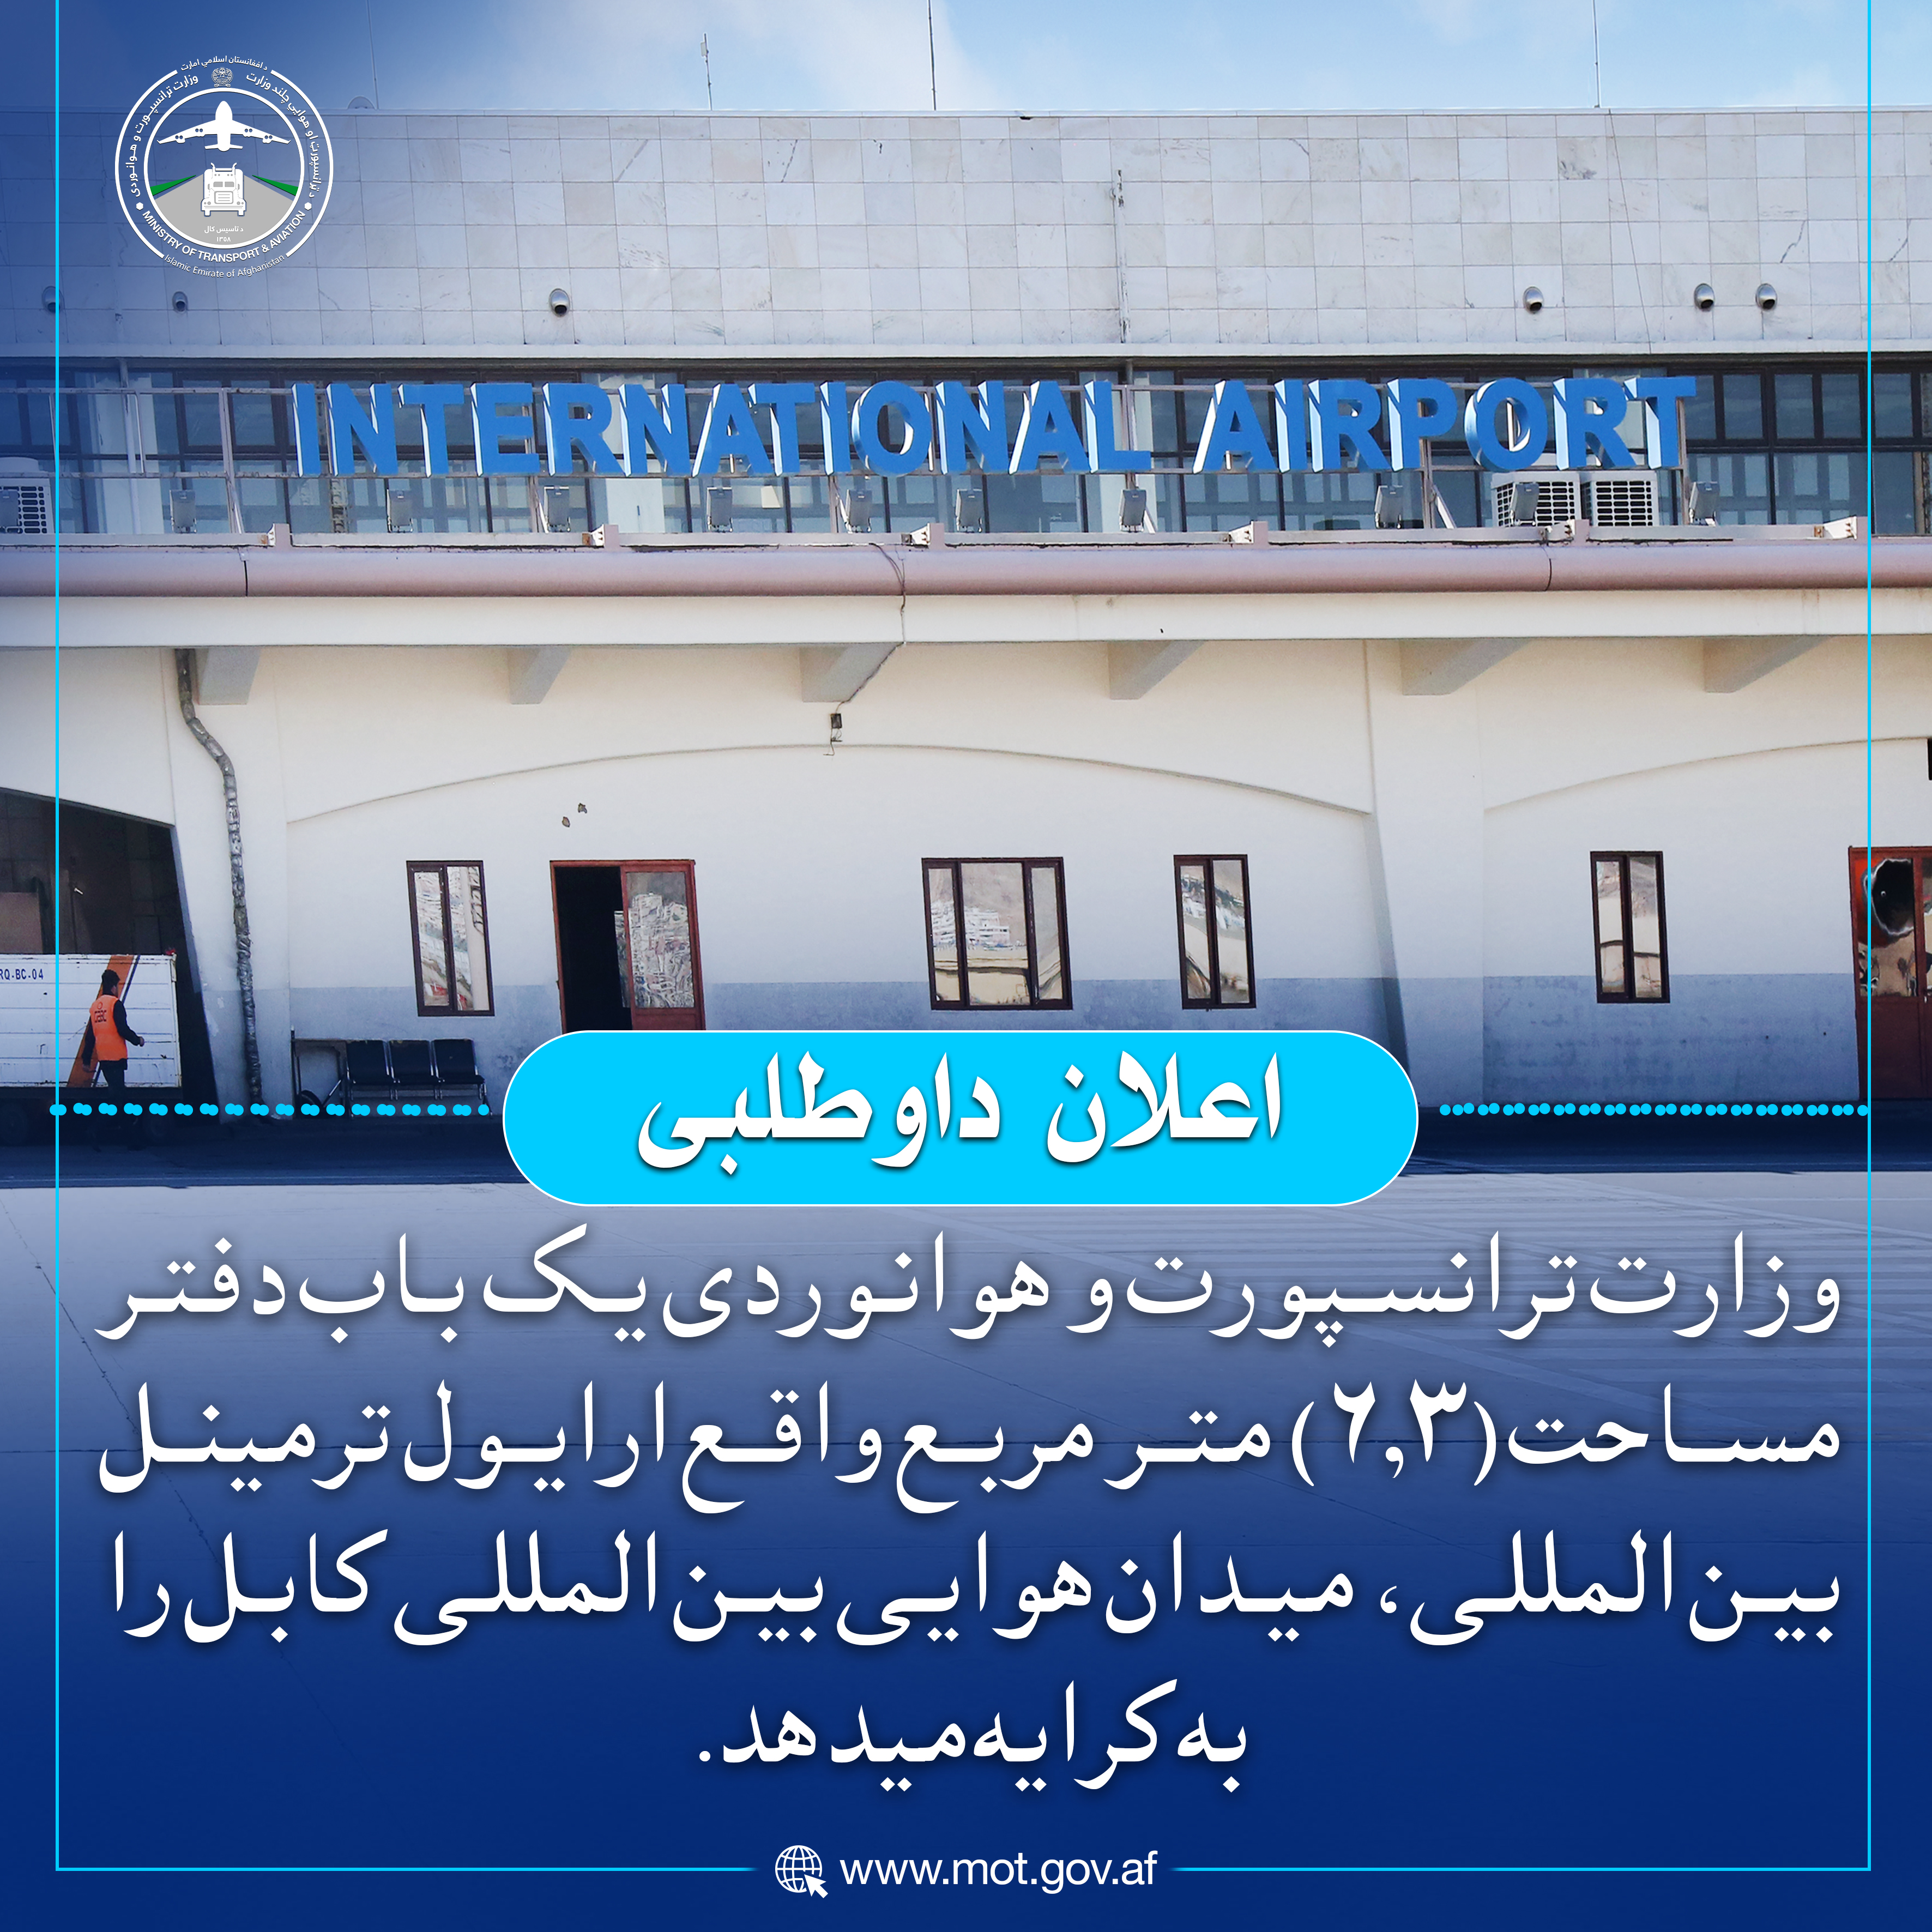 وزارت ترانسپورت و هوانوردی یک باب دفتر مساحت (6.۳) متر مربع واقع ارایول ترمینل بین المللی، میدان هوایی بین المللی کابل را به کرایه میدهد.